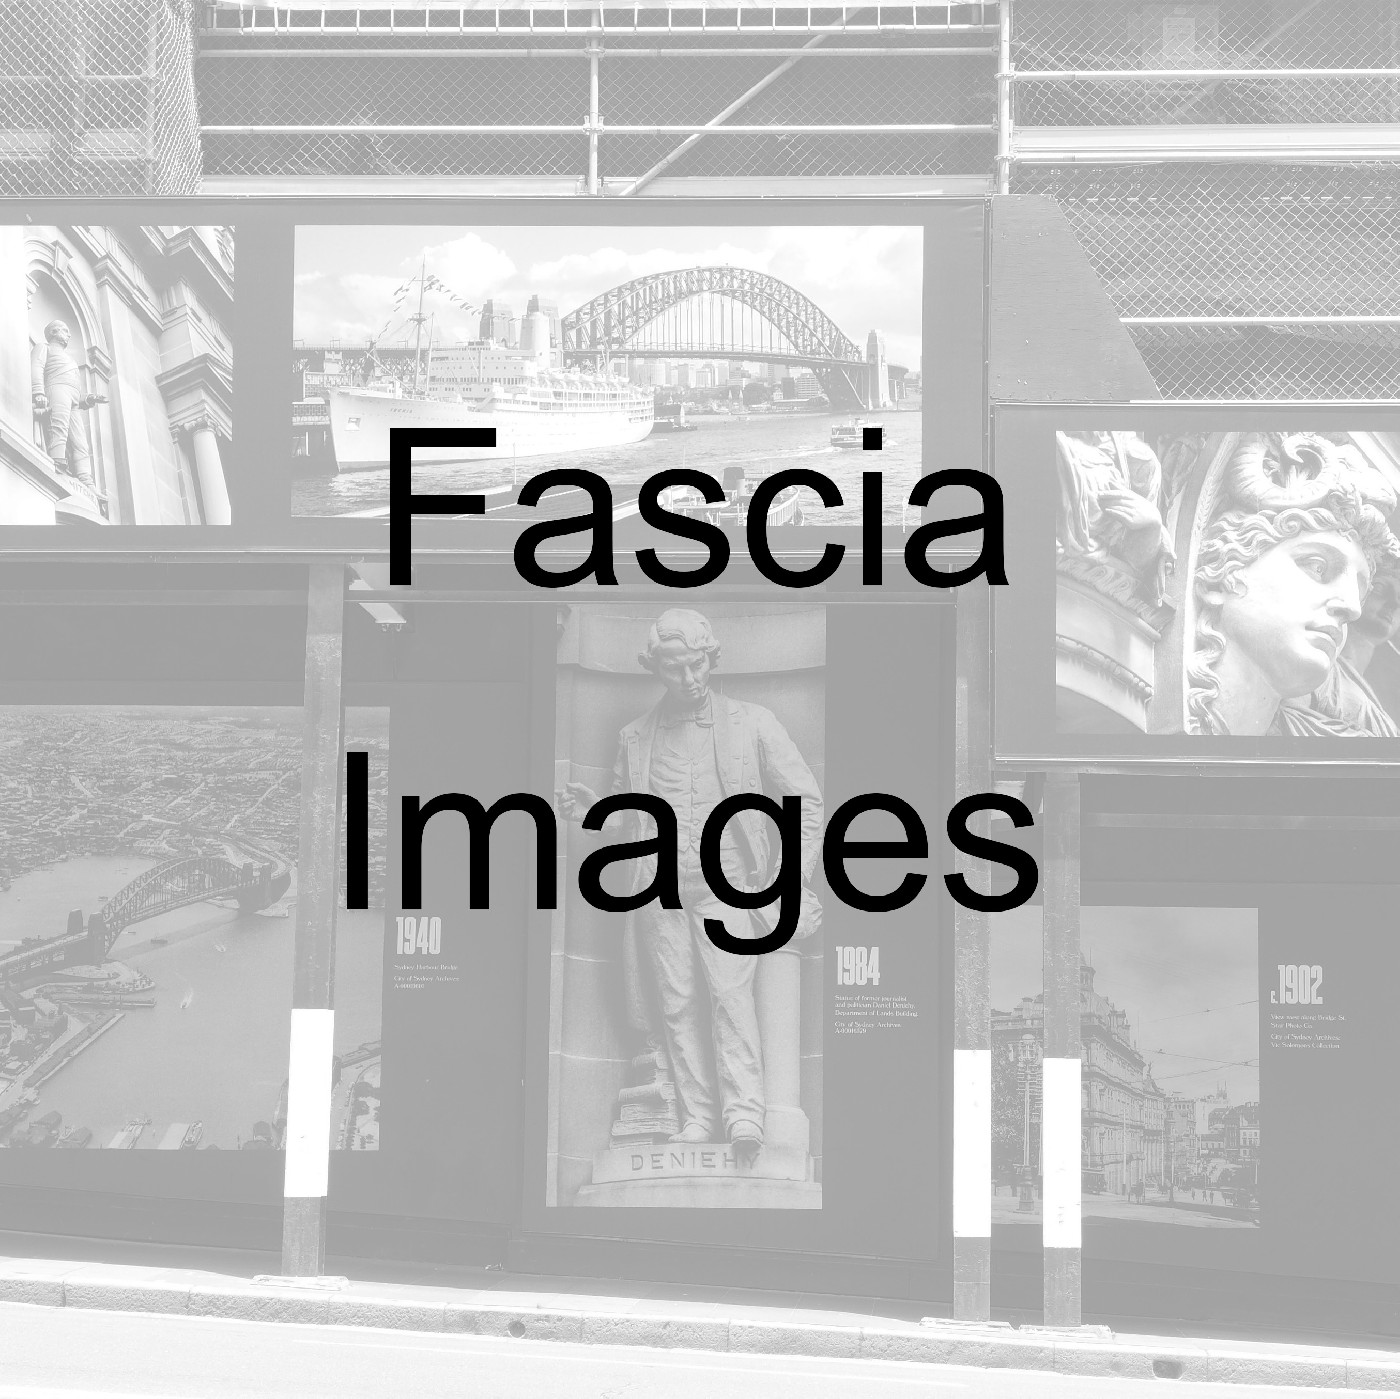 Hyde Park - Fascia Images